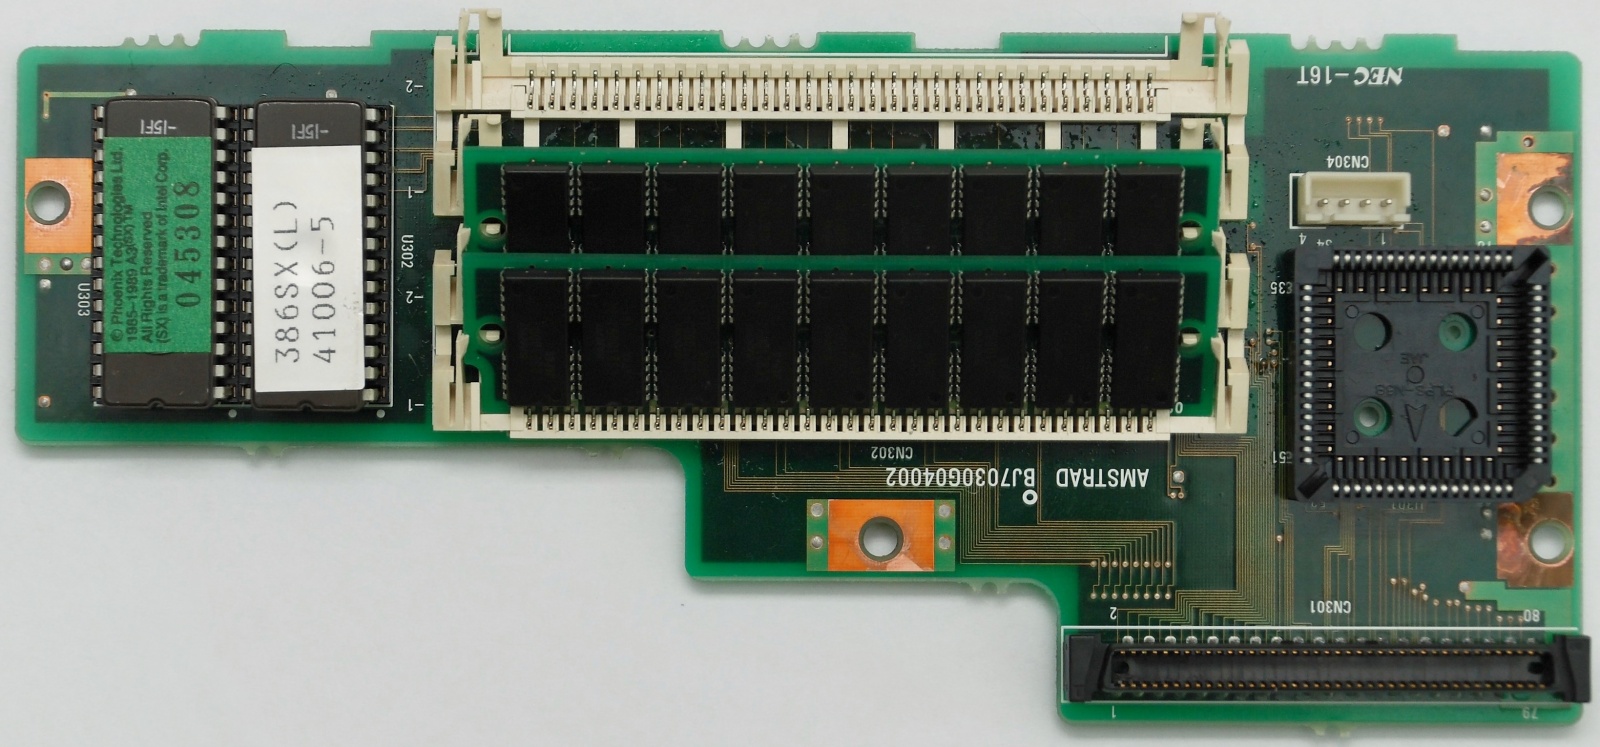 7 килограммов портативности, или ноутбук Amstrad ALT-386SX из 1988 года. Часть 2 — разбираем убердевайс - 5